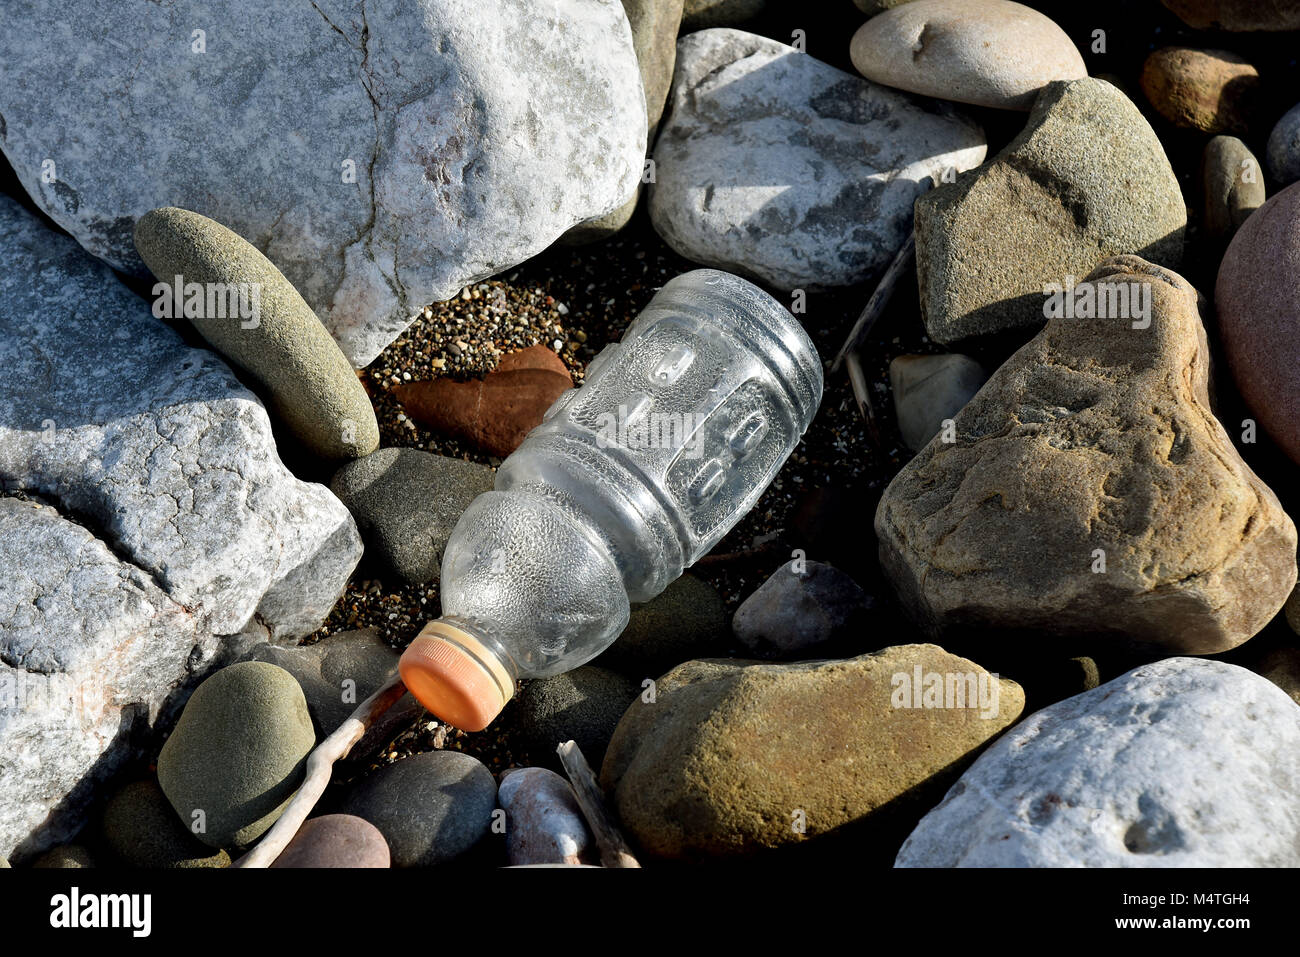 Le foto scattate il 16 febbraio 2018 a Porthcawl, nel Galles del Sud. Mostra dei rifiuti di plastica sulla spiaggia essi mostrano anche i rifiuti e i rifiuti sulla spiaggia Foto Stock